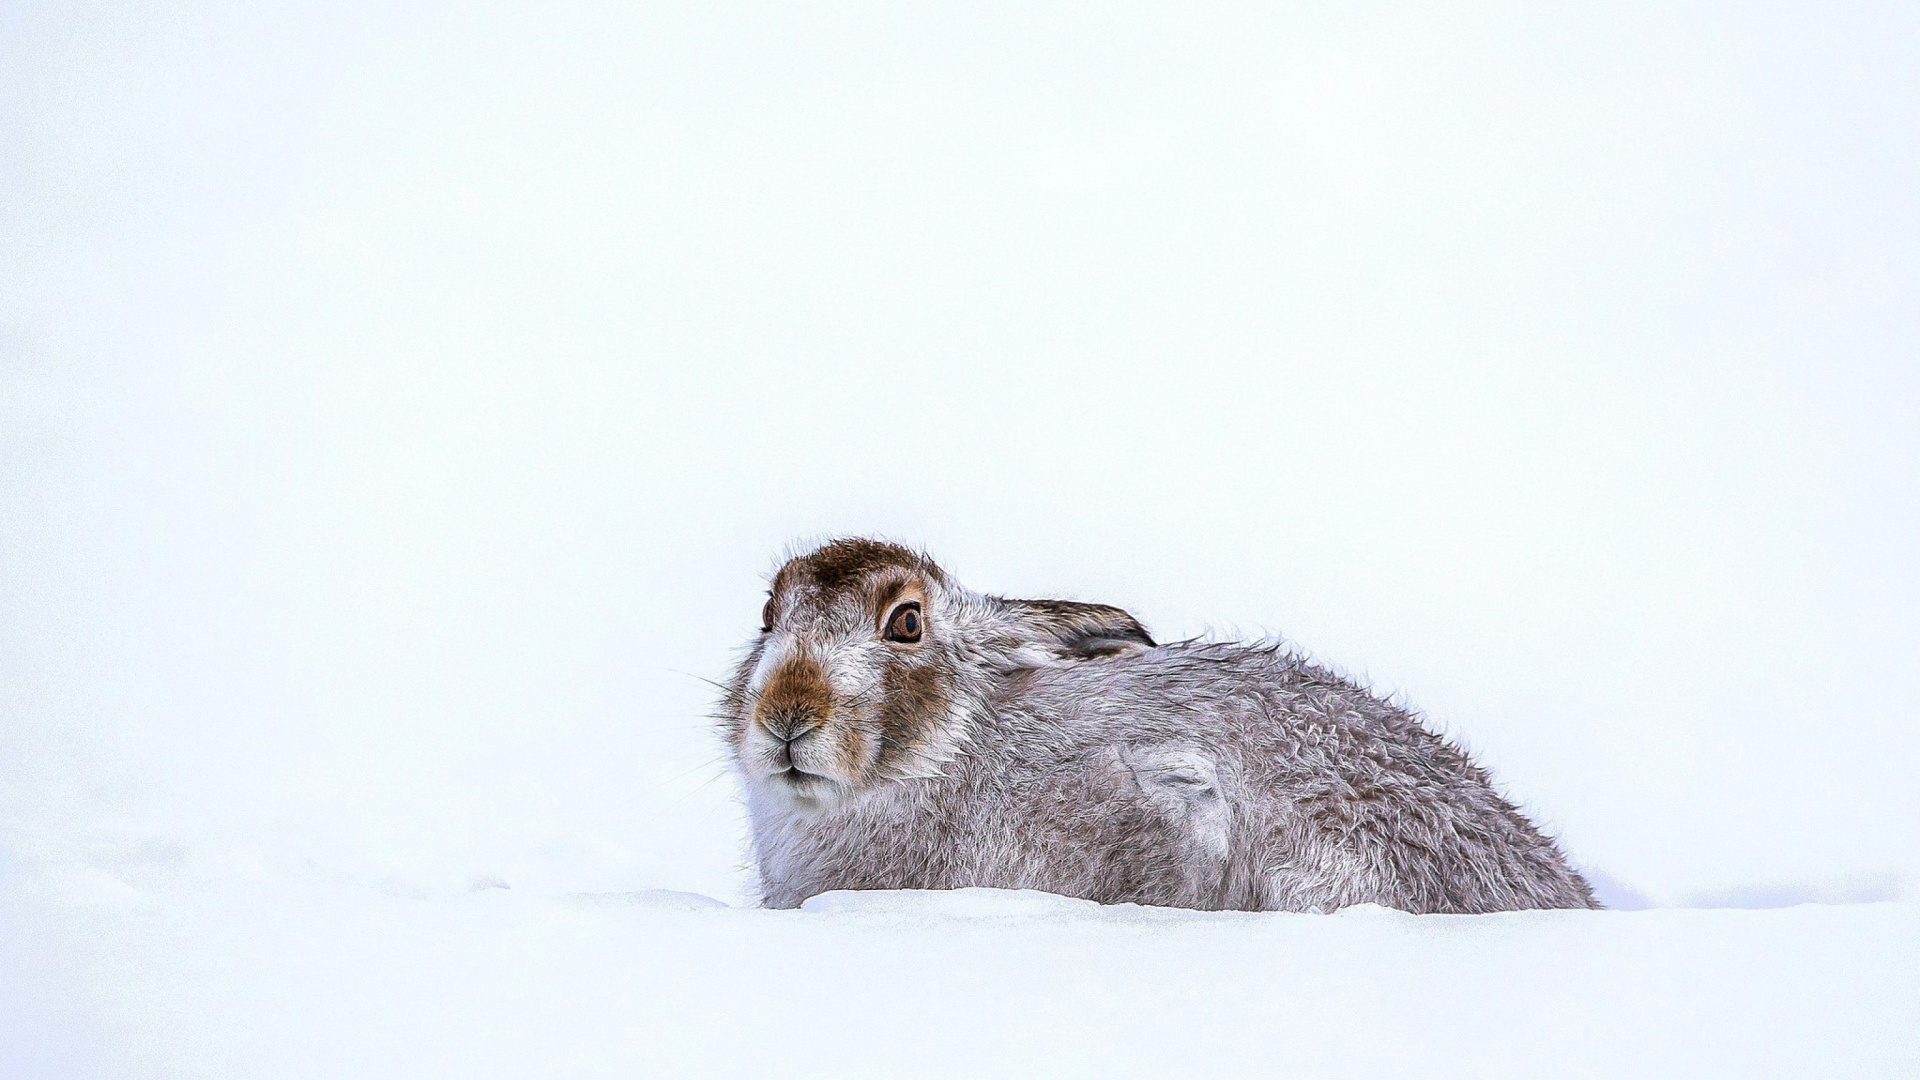 Sfondi Rabbit in Snow 1920x1080